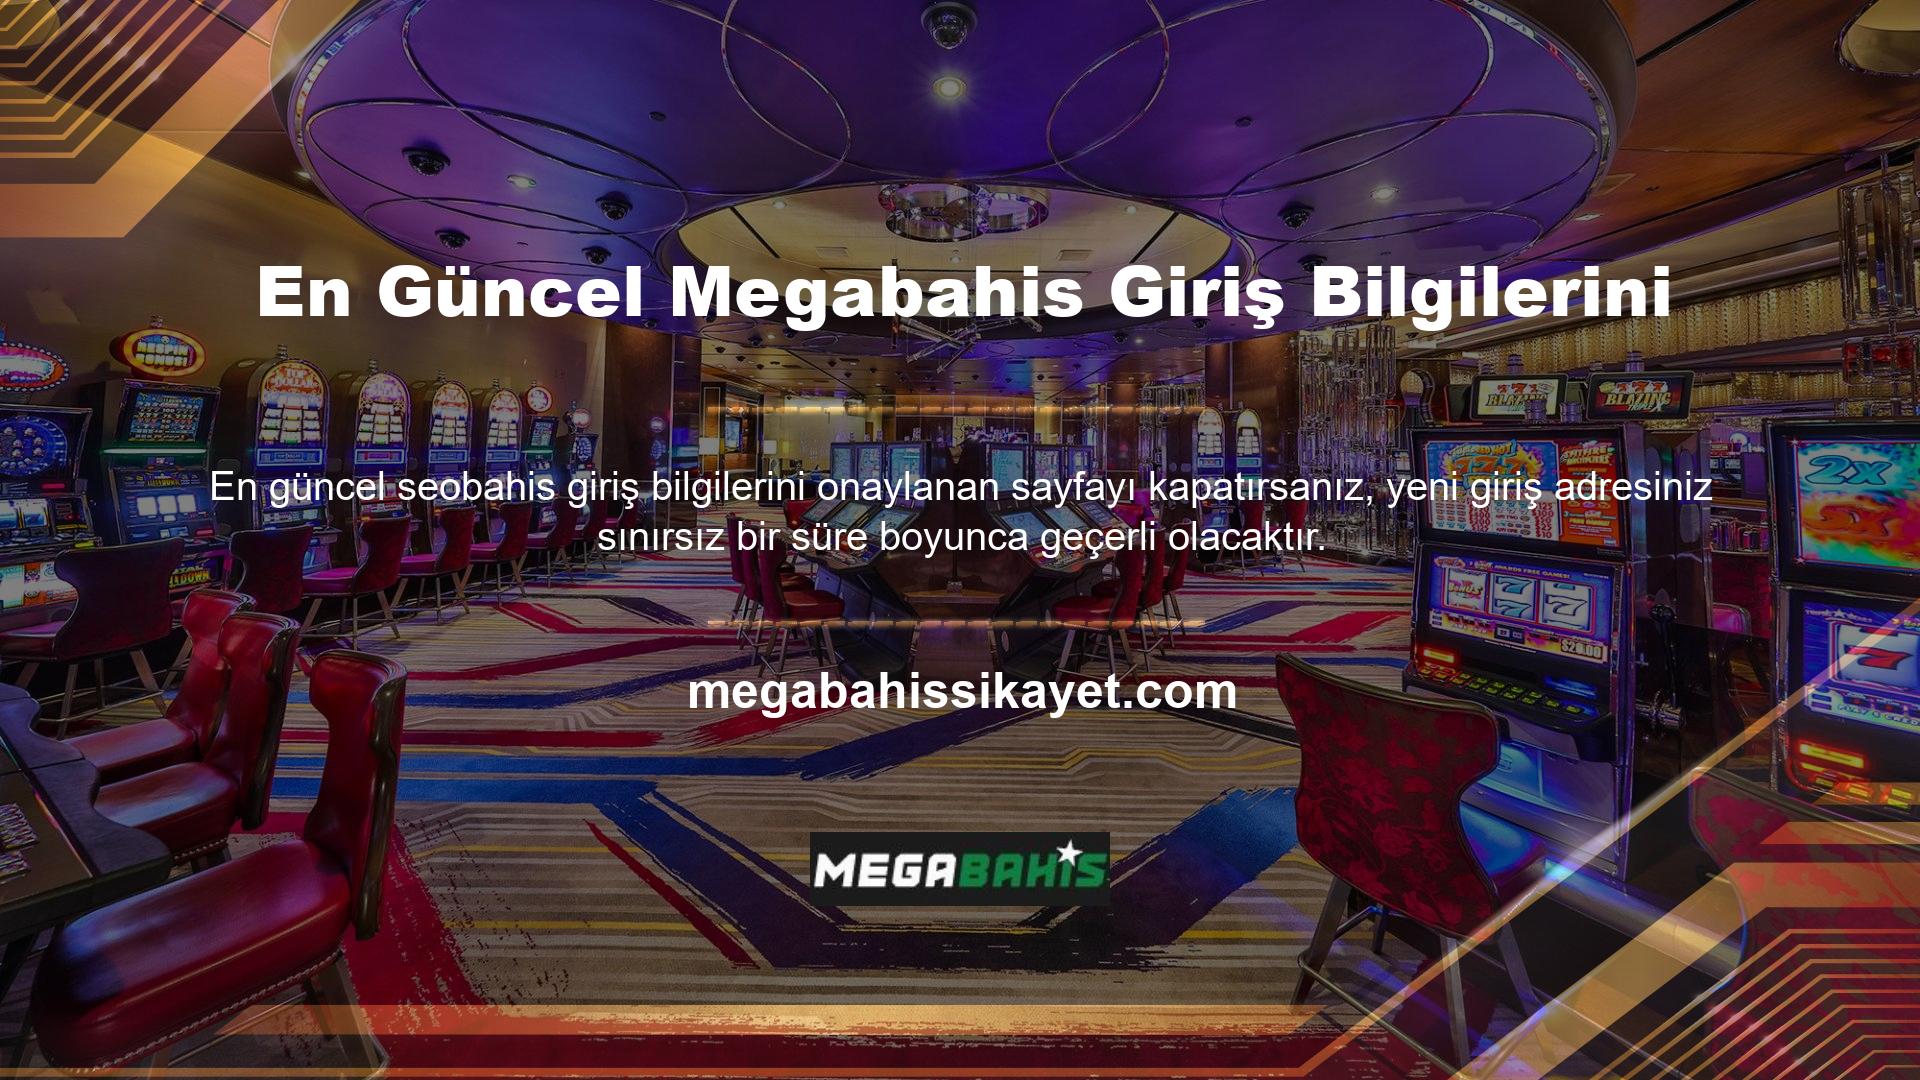 Megabahis çevrimiçi casino sitesinin site yöneticisi her zaman sorumludur